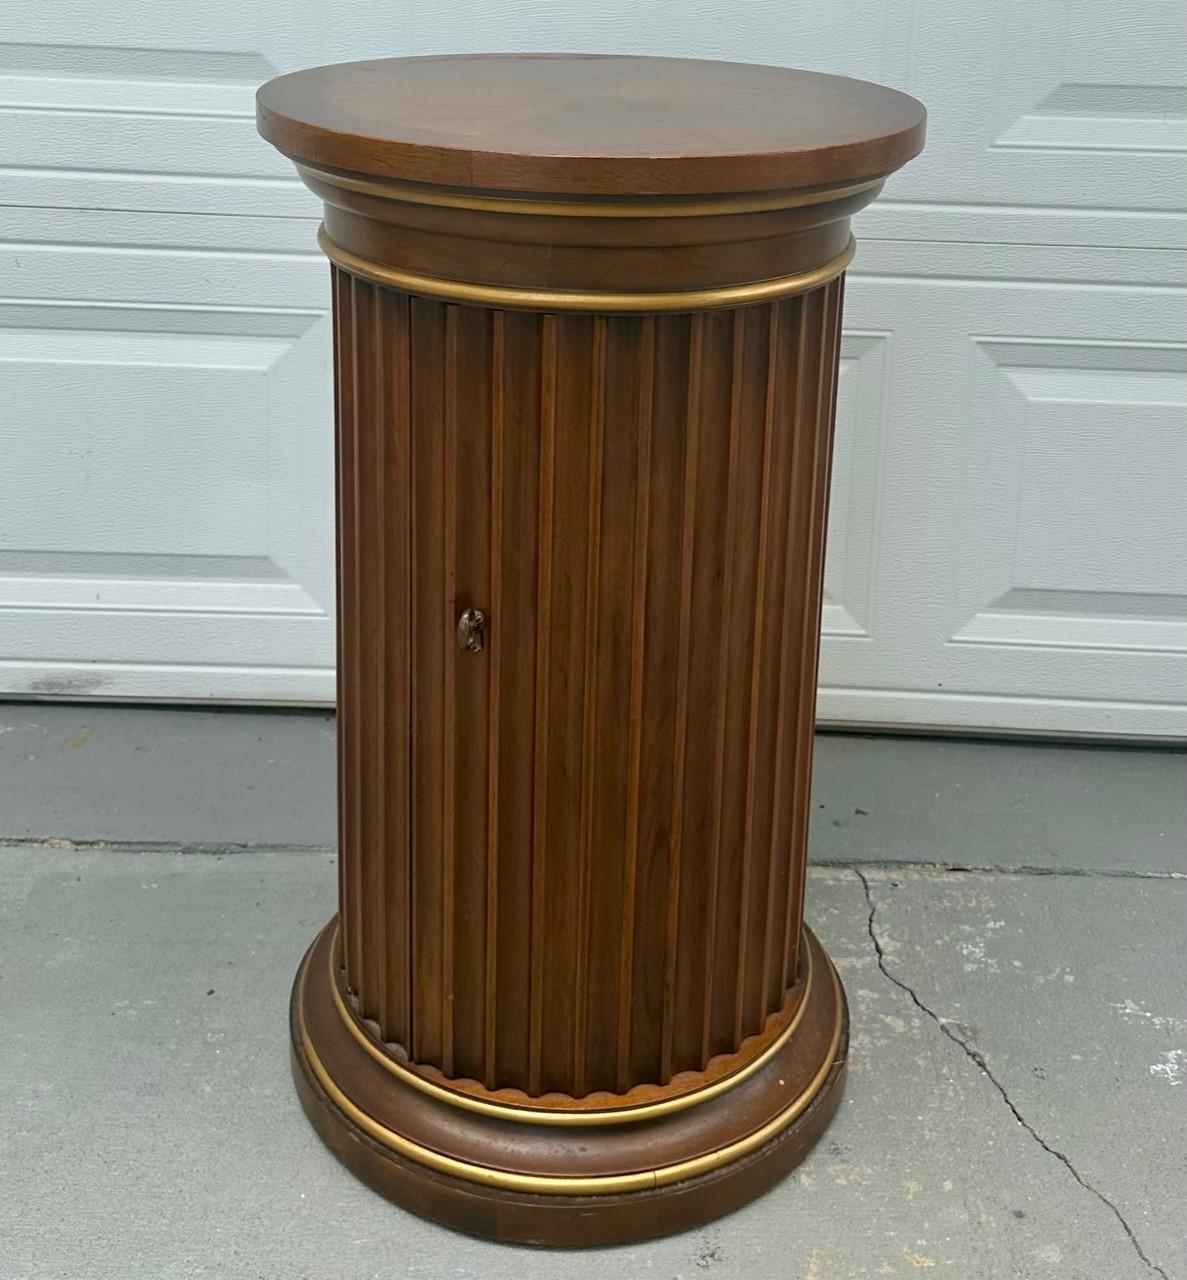 Vintage Drexel Et- Cetera Fluted Column Parquetry Top Pedestal Cabinet End Table.

The 30